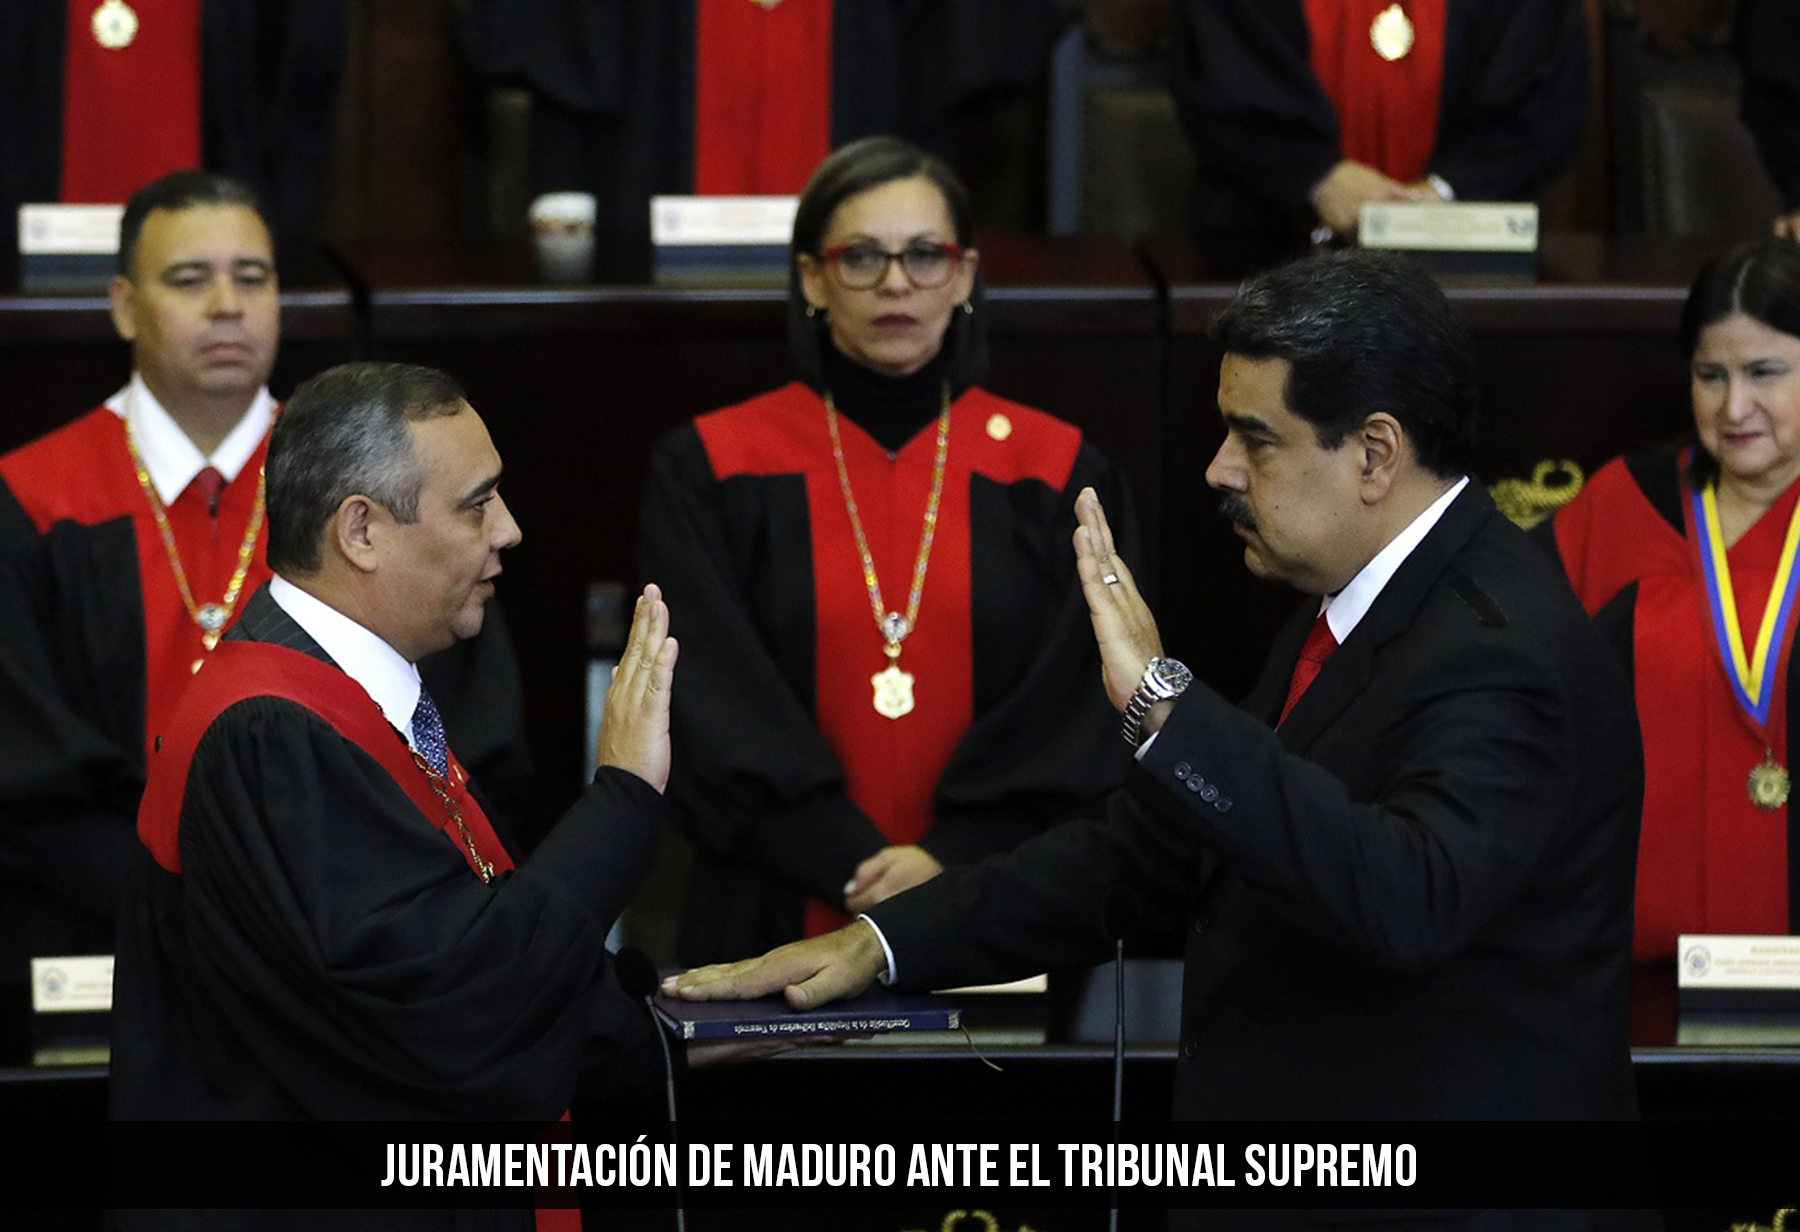 Juramentacion de Maduro ante el Tribunal Supremo